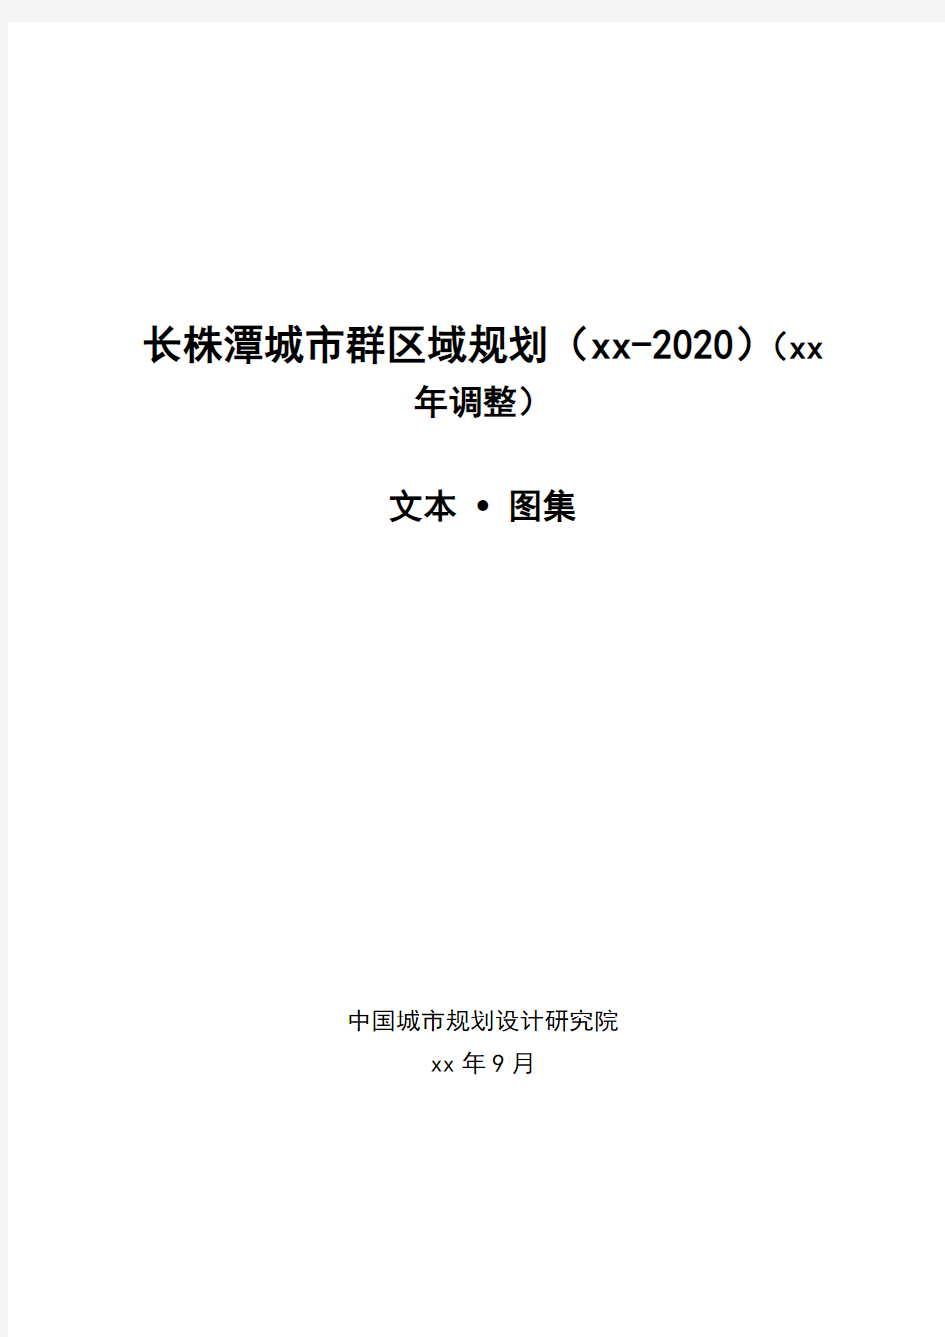 长株潭城市群区域规划(2008-2020)(调整)